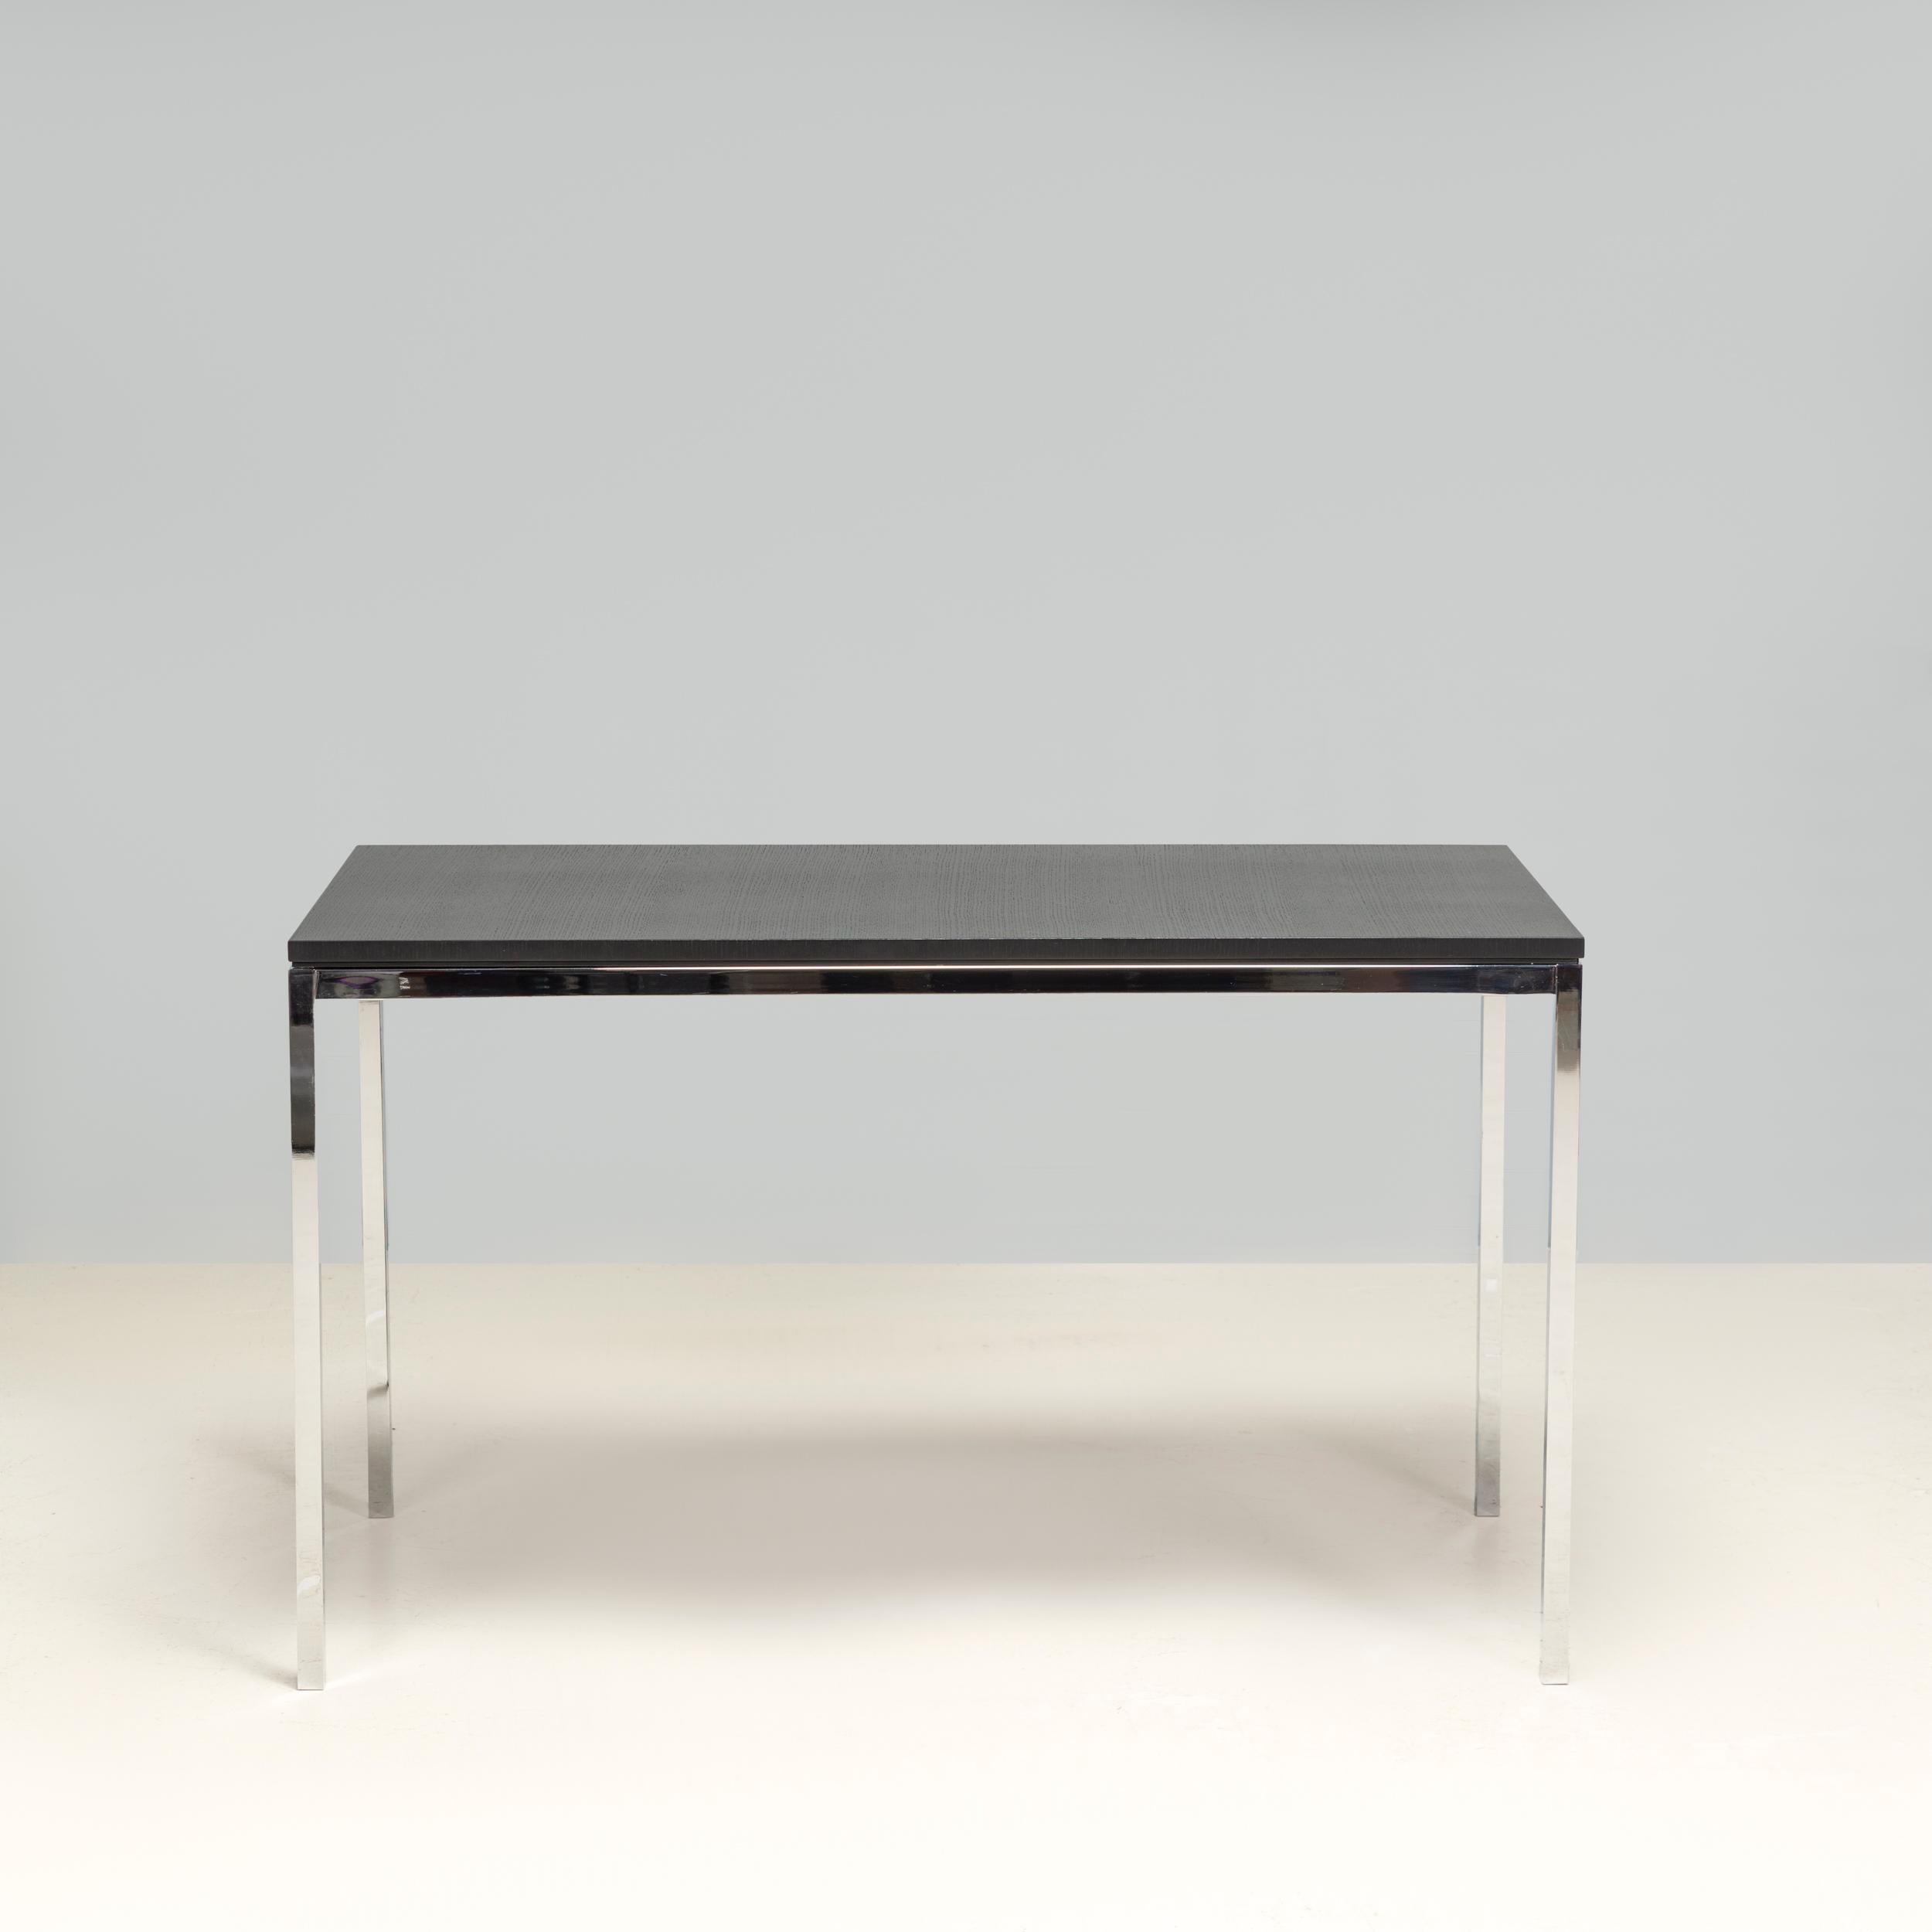 Der Mini Desk wurde 1954 von Florence Knoll entworfen und gehört zu der von Knoll hergestellten High Table-Serie.

Der Schreibtisch besteht aus einem schlanken Gestell aus poliertem Chrom und hat eine Tischplatte aus ebonisiertem Eichenfurnier.

Das